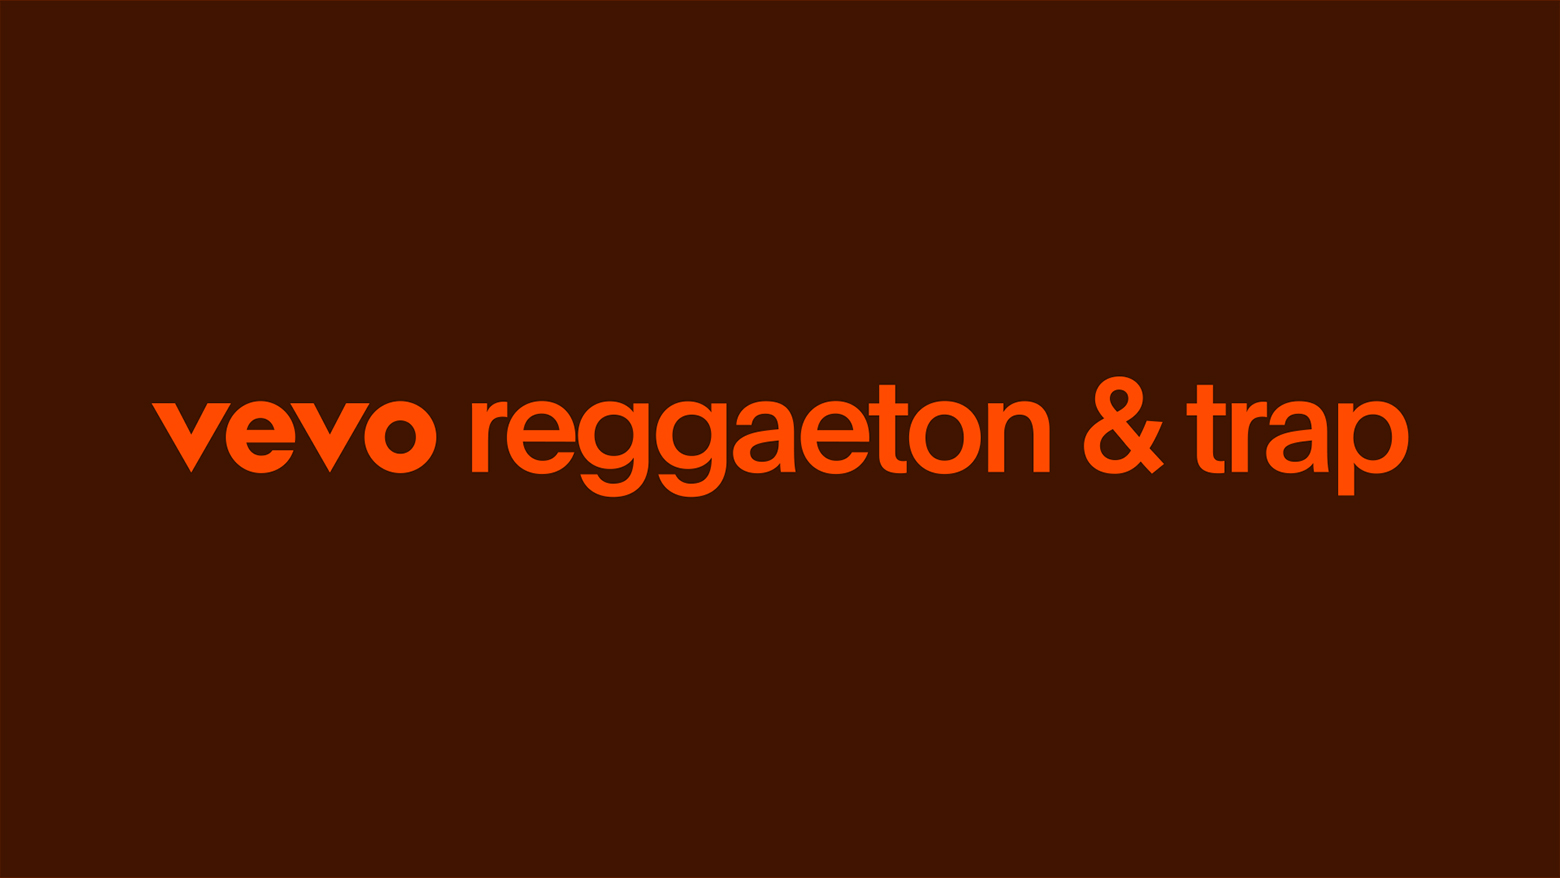 Vevo Reggaeton & Trap